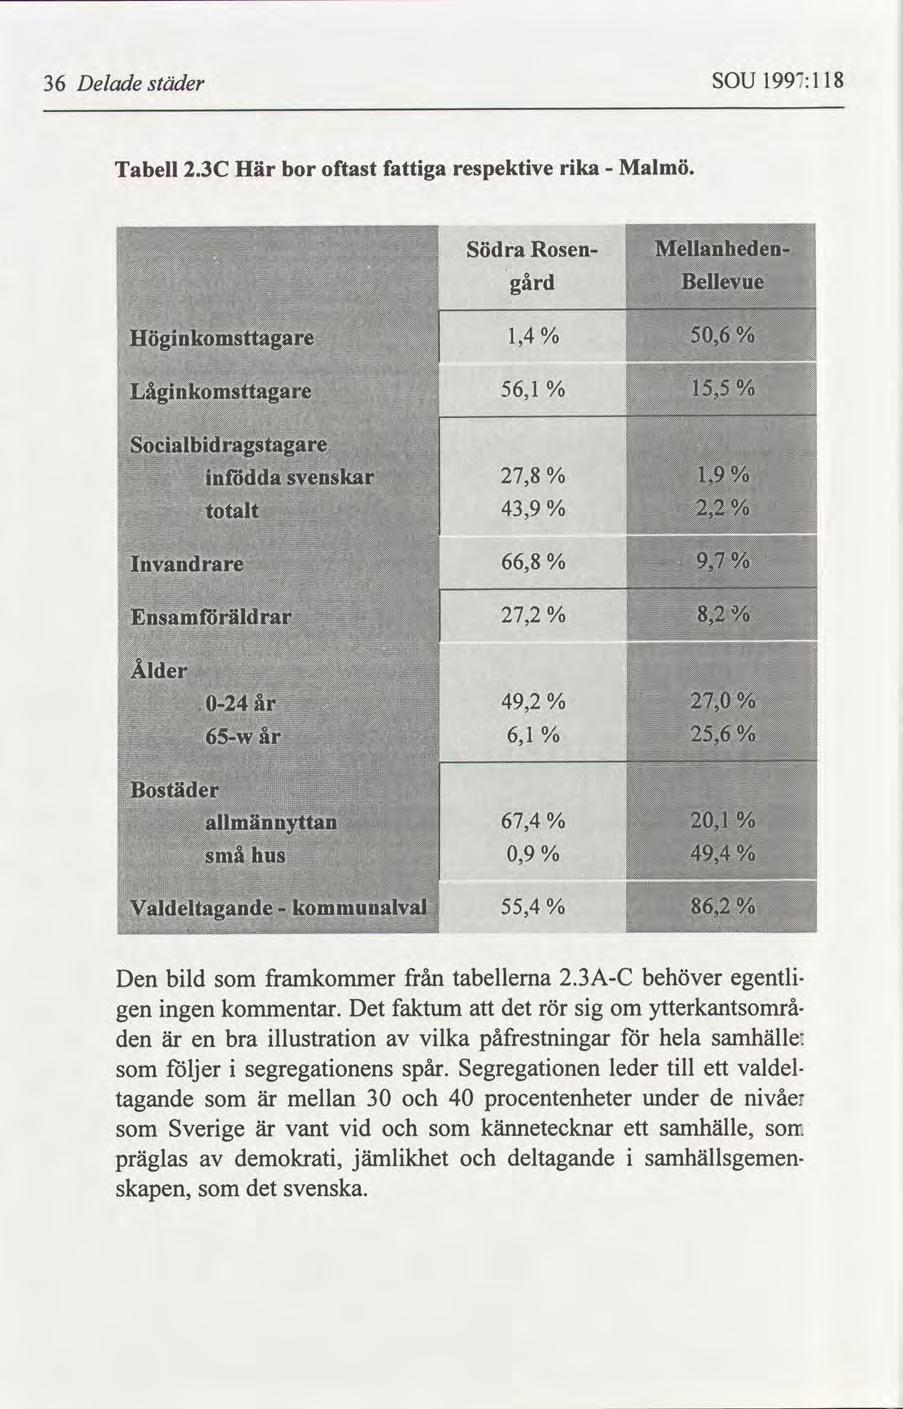 36 Delade städer SOU 1997:118 Tabell 2.3C Här bor oftast fattiga respektive rika Malmö. Södra i gård RosenF i i1,4 /o % 56,1 l Den bild som framkommer från tabellerna 2.